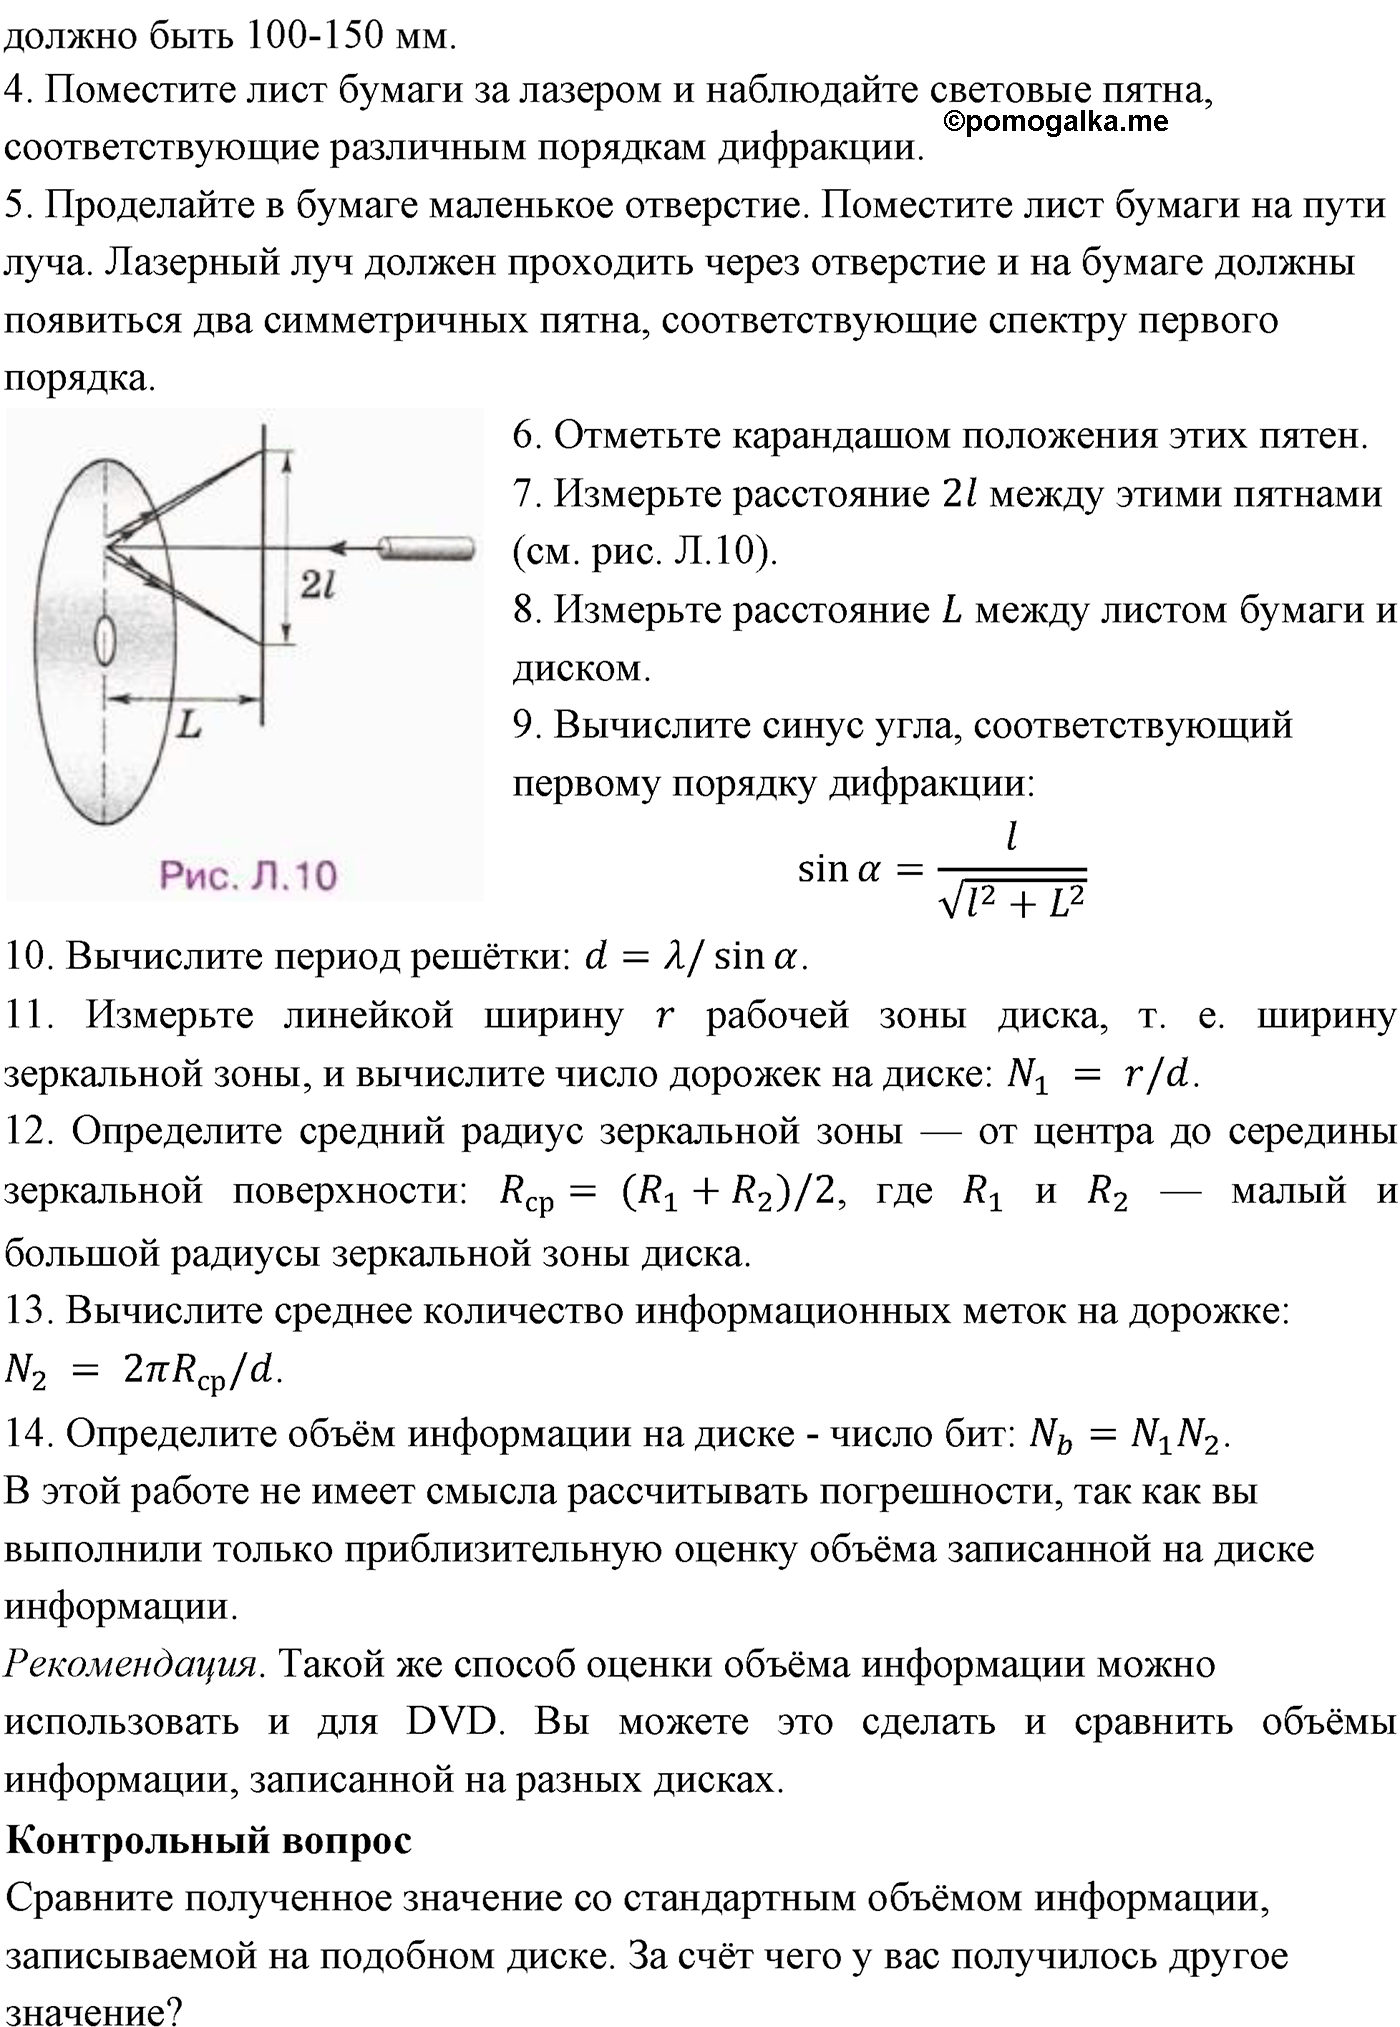 лабораторный опыт №7 физика 11 класс Мякишев